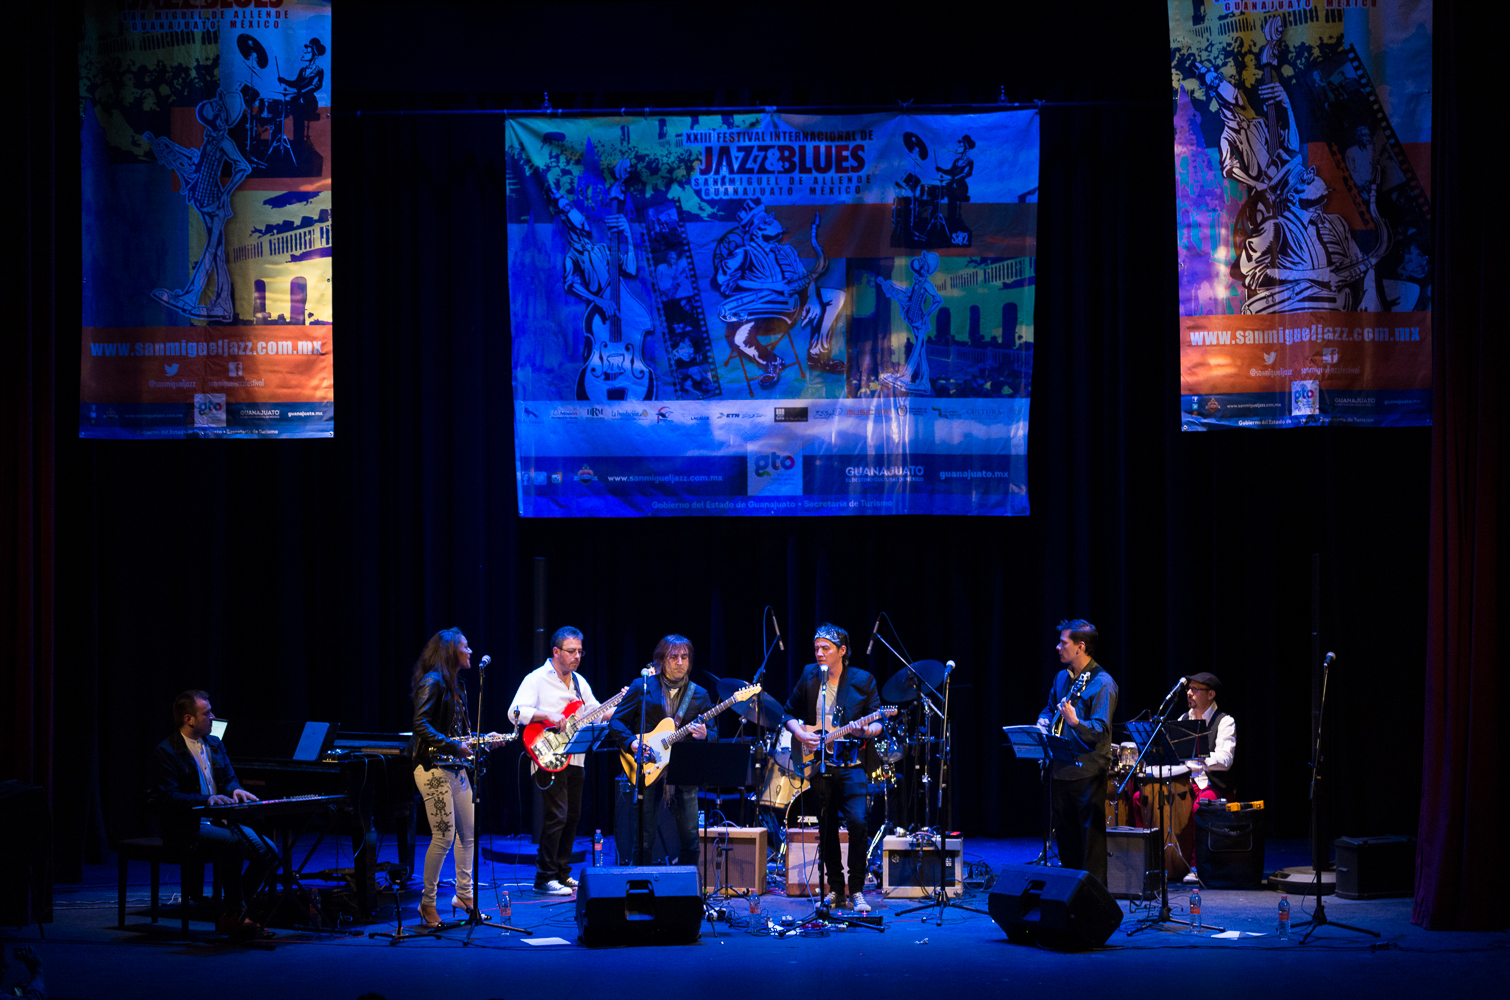 Cierre del Festival Internacional de Jazz y Blues de San Miguel de Allende con Antonio Lozoya J & B Collective e Invitados - Tributo a Eric Clapton, el 19 de noviembre 2017 en el Teatro Ángela Peralta.